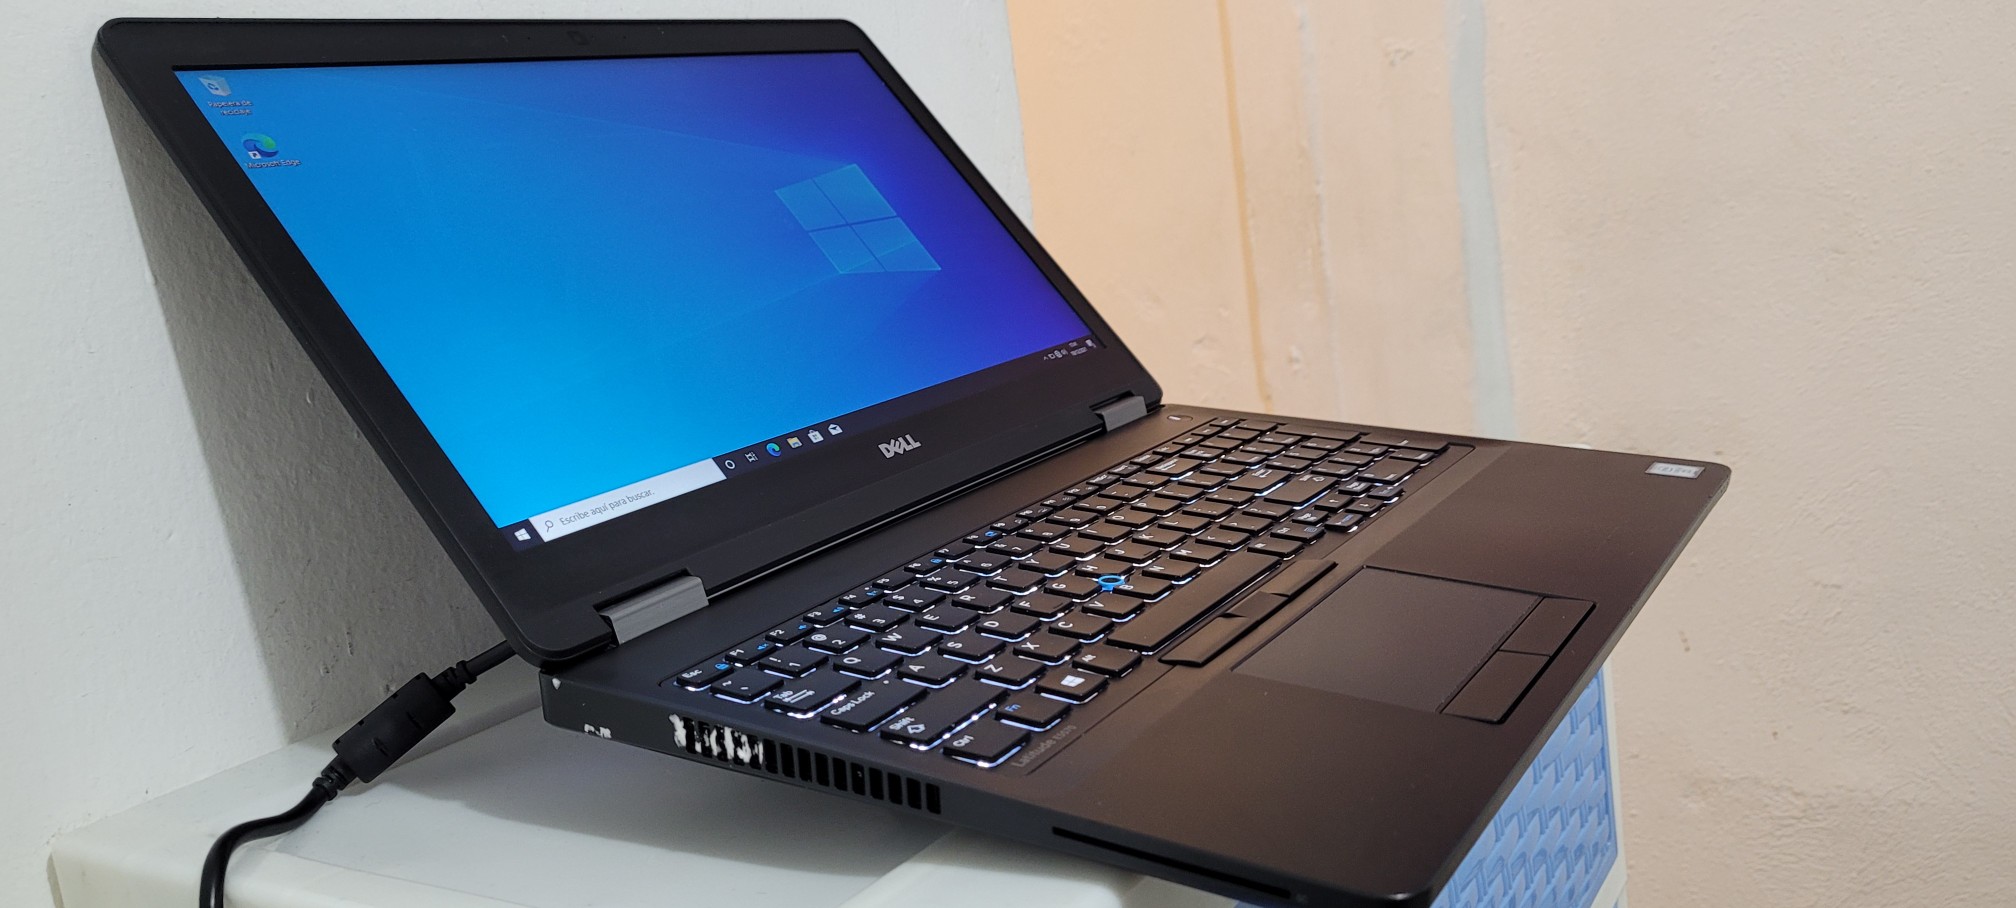 computadoras y laptops - Laptop Dell 17 Pulg Core i7 2.7ghz Ram 8gb Disco 1000gb Teclado lumimico 1